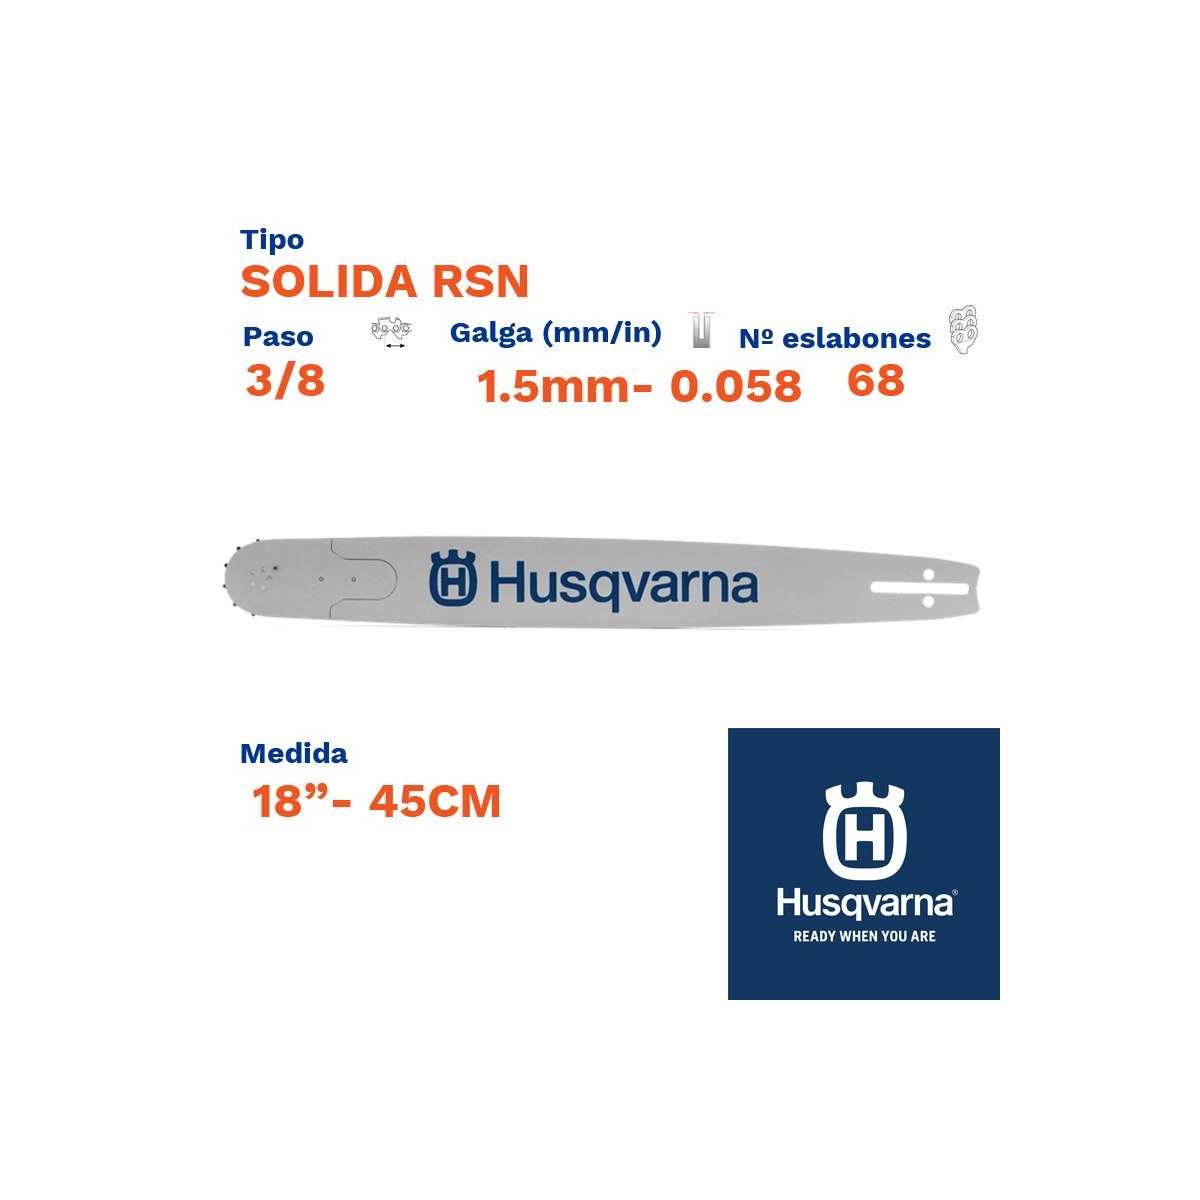 Husqvarna espada solida rsn sop. p. 1.5mm 68 eslabones-pc 3/8  18"- 45cm